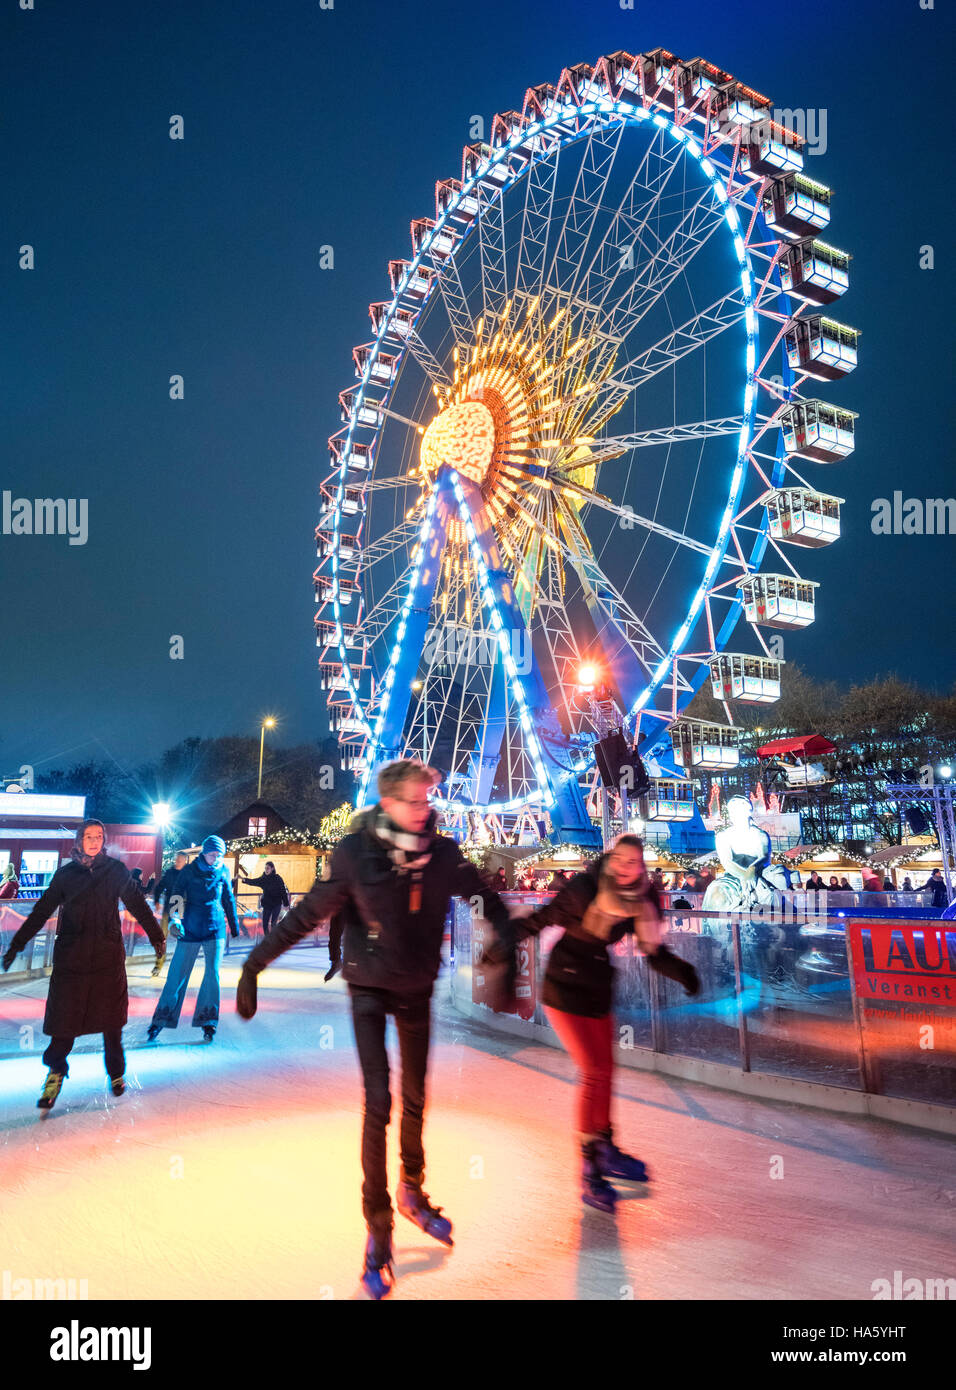 Eisbahn am traditionellen Weihnachtsmarkt am Alexanderplatz in Mitte Berlin Deutschland 2016 Stockfoto